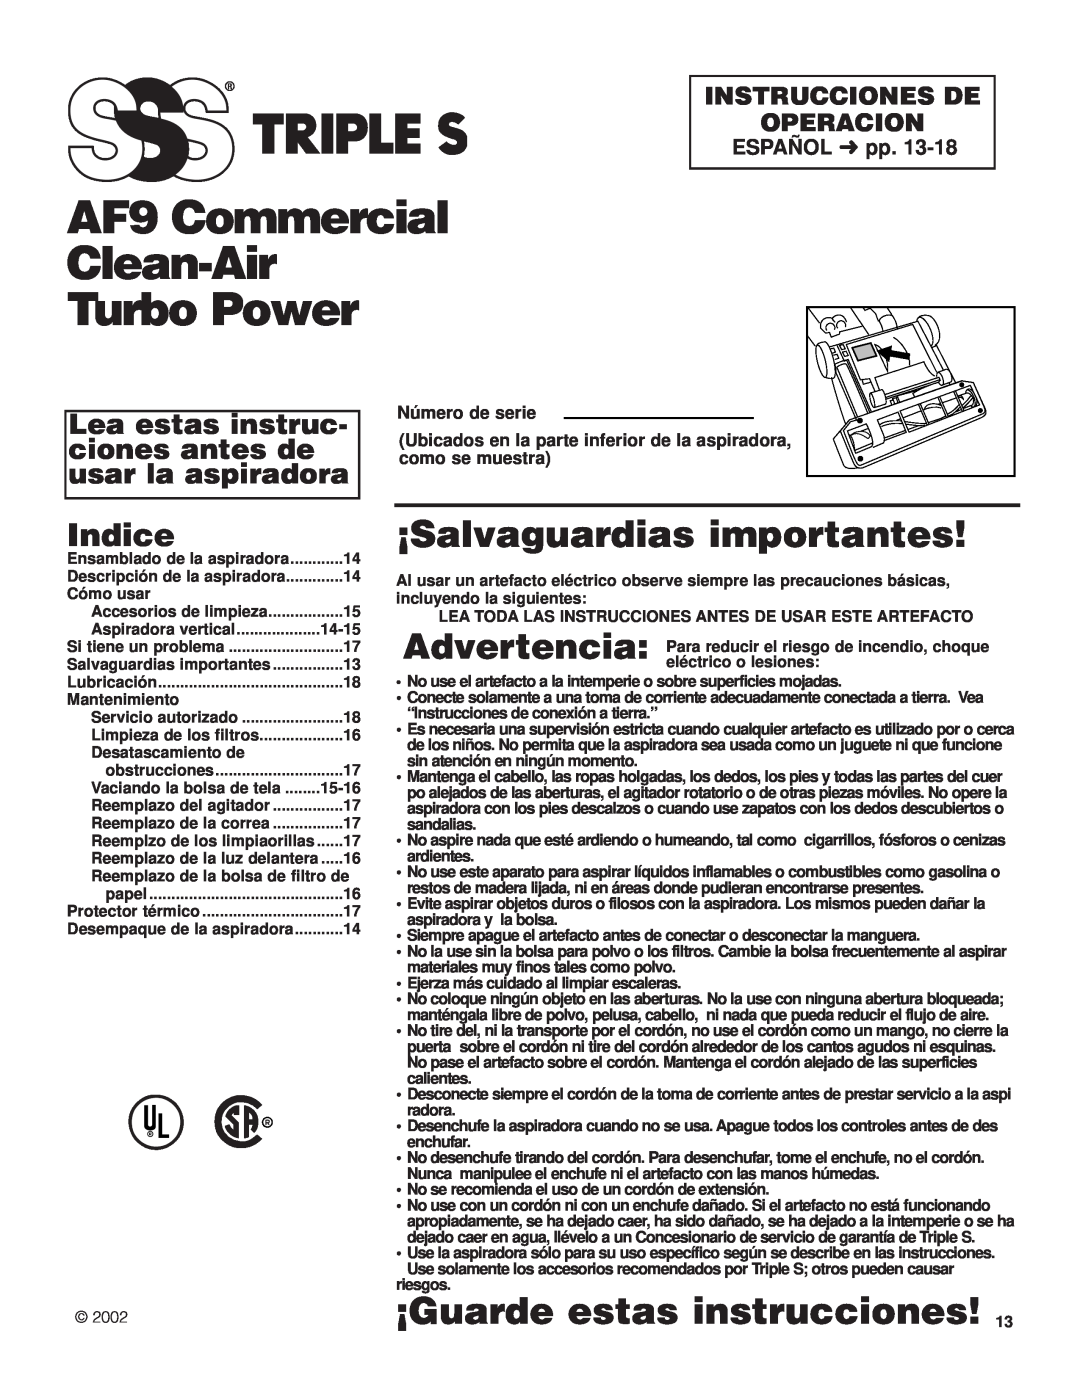 SSS AF9 Commercial Clean-Air Turbo Power, ¡Salvaguardias importantes, ¡Guarde estas instrucciones, Indice, ESPAÑOL pp 